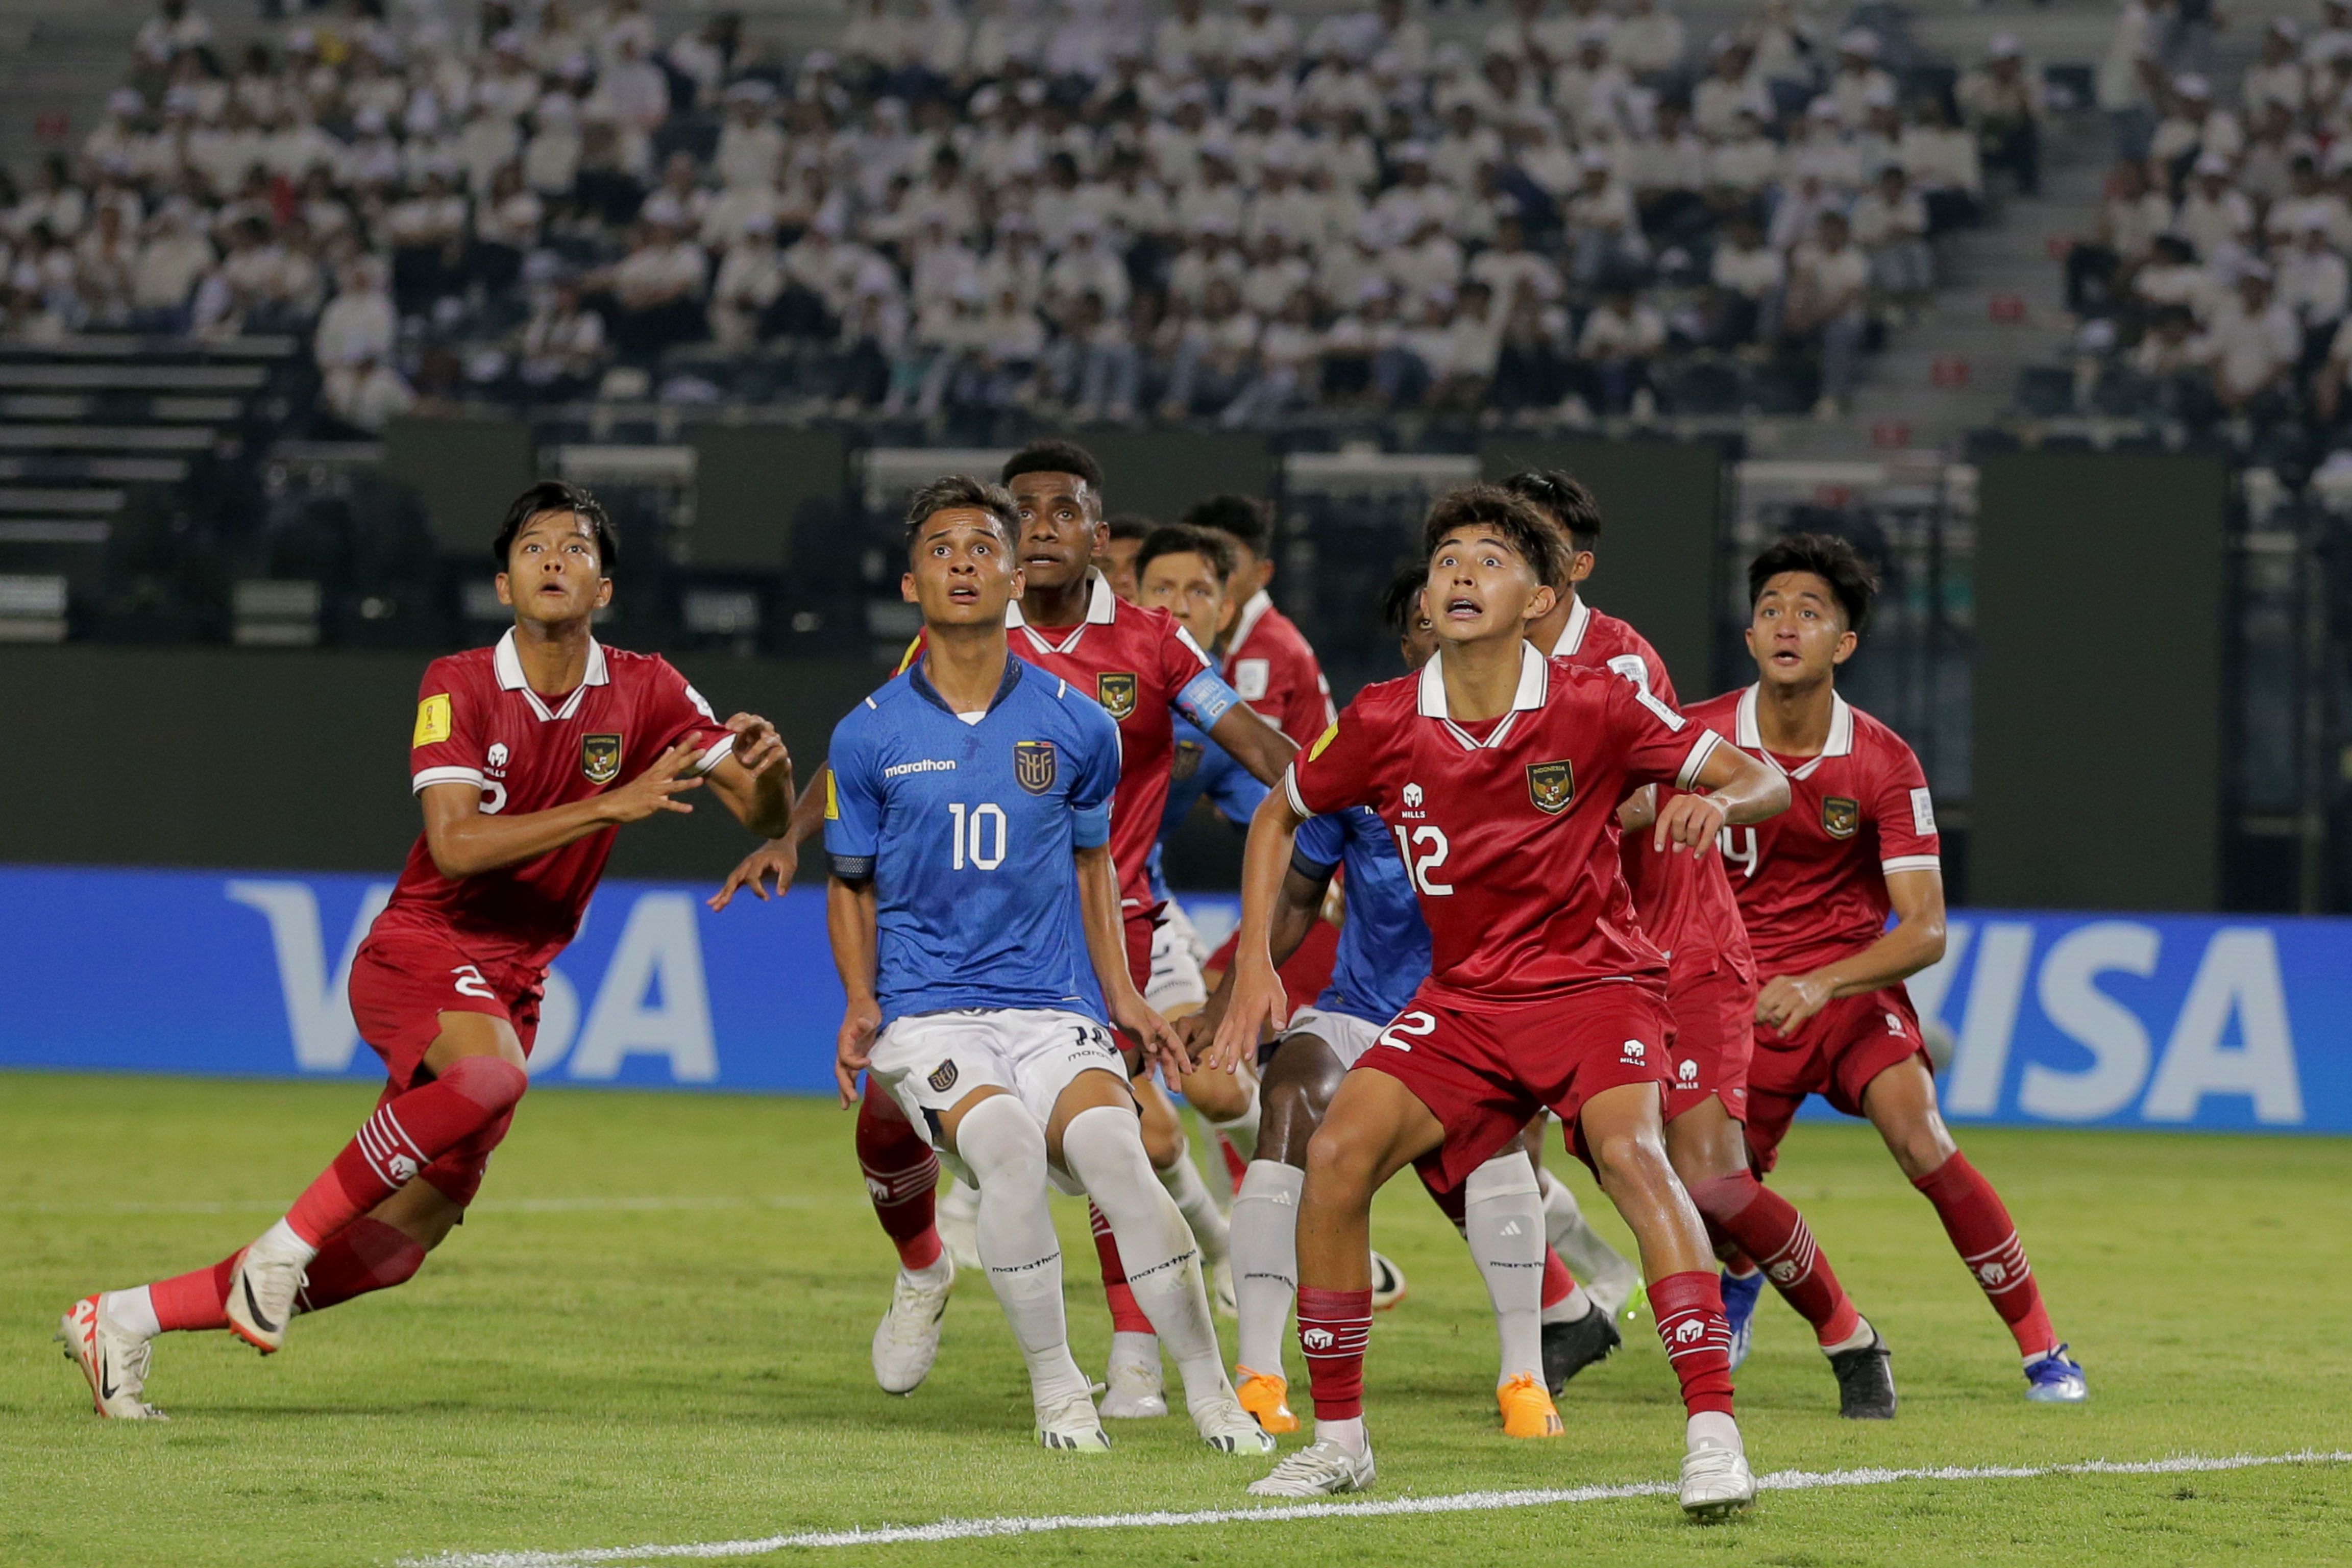 Piala Dunia U17: Potensi Kejutan Indonesia Vs Panama, Sepak Bola Bukan Matematika